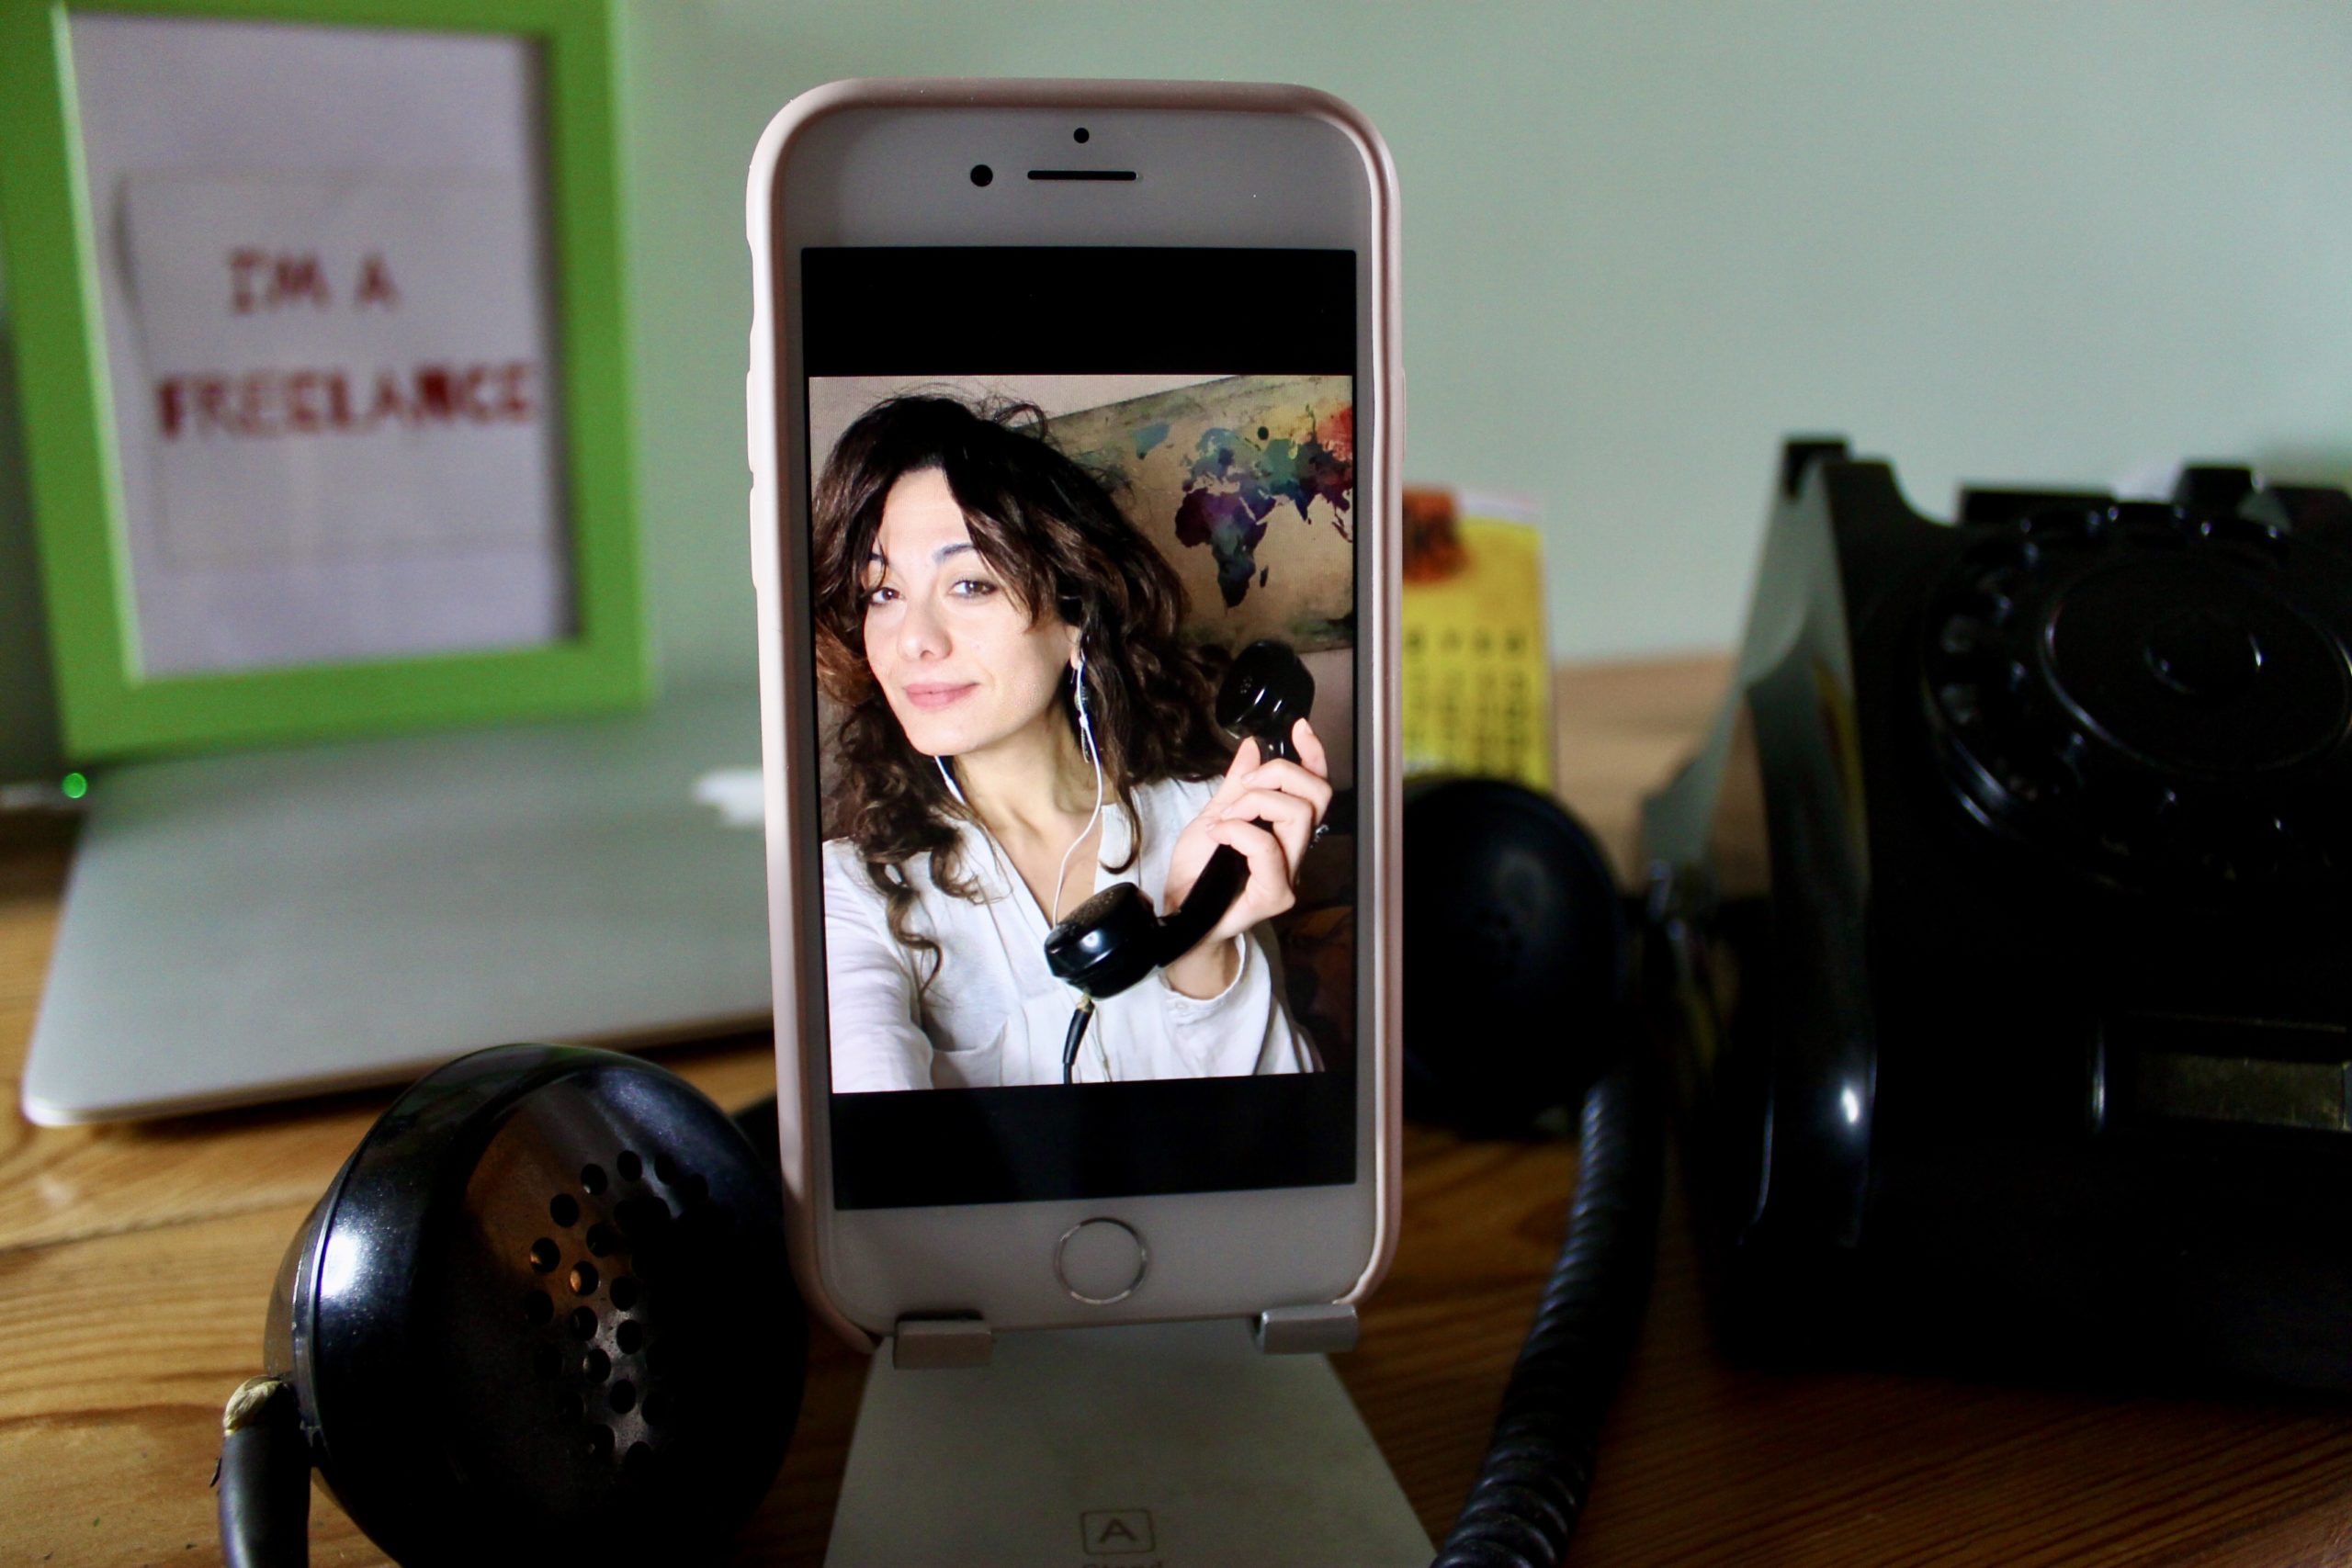 sabrina ripresa nello schermo di un iPhone, con una cornetta di antico telefono analogico in mano_Sfondo di una scrivania_video chiamate di lavoro_errori